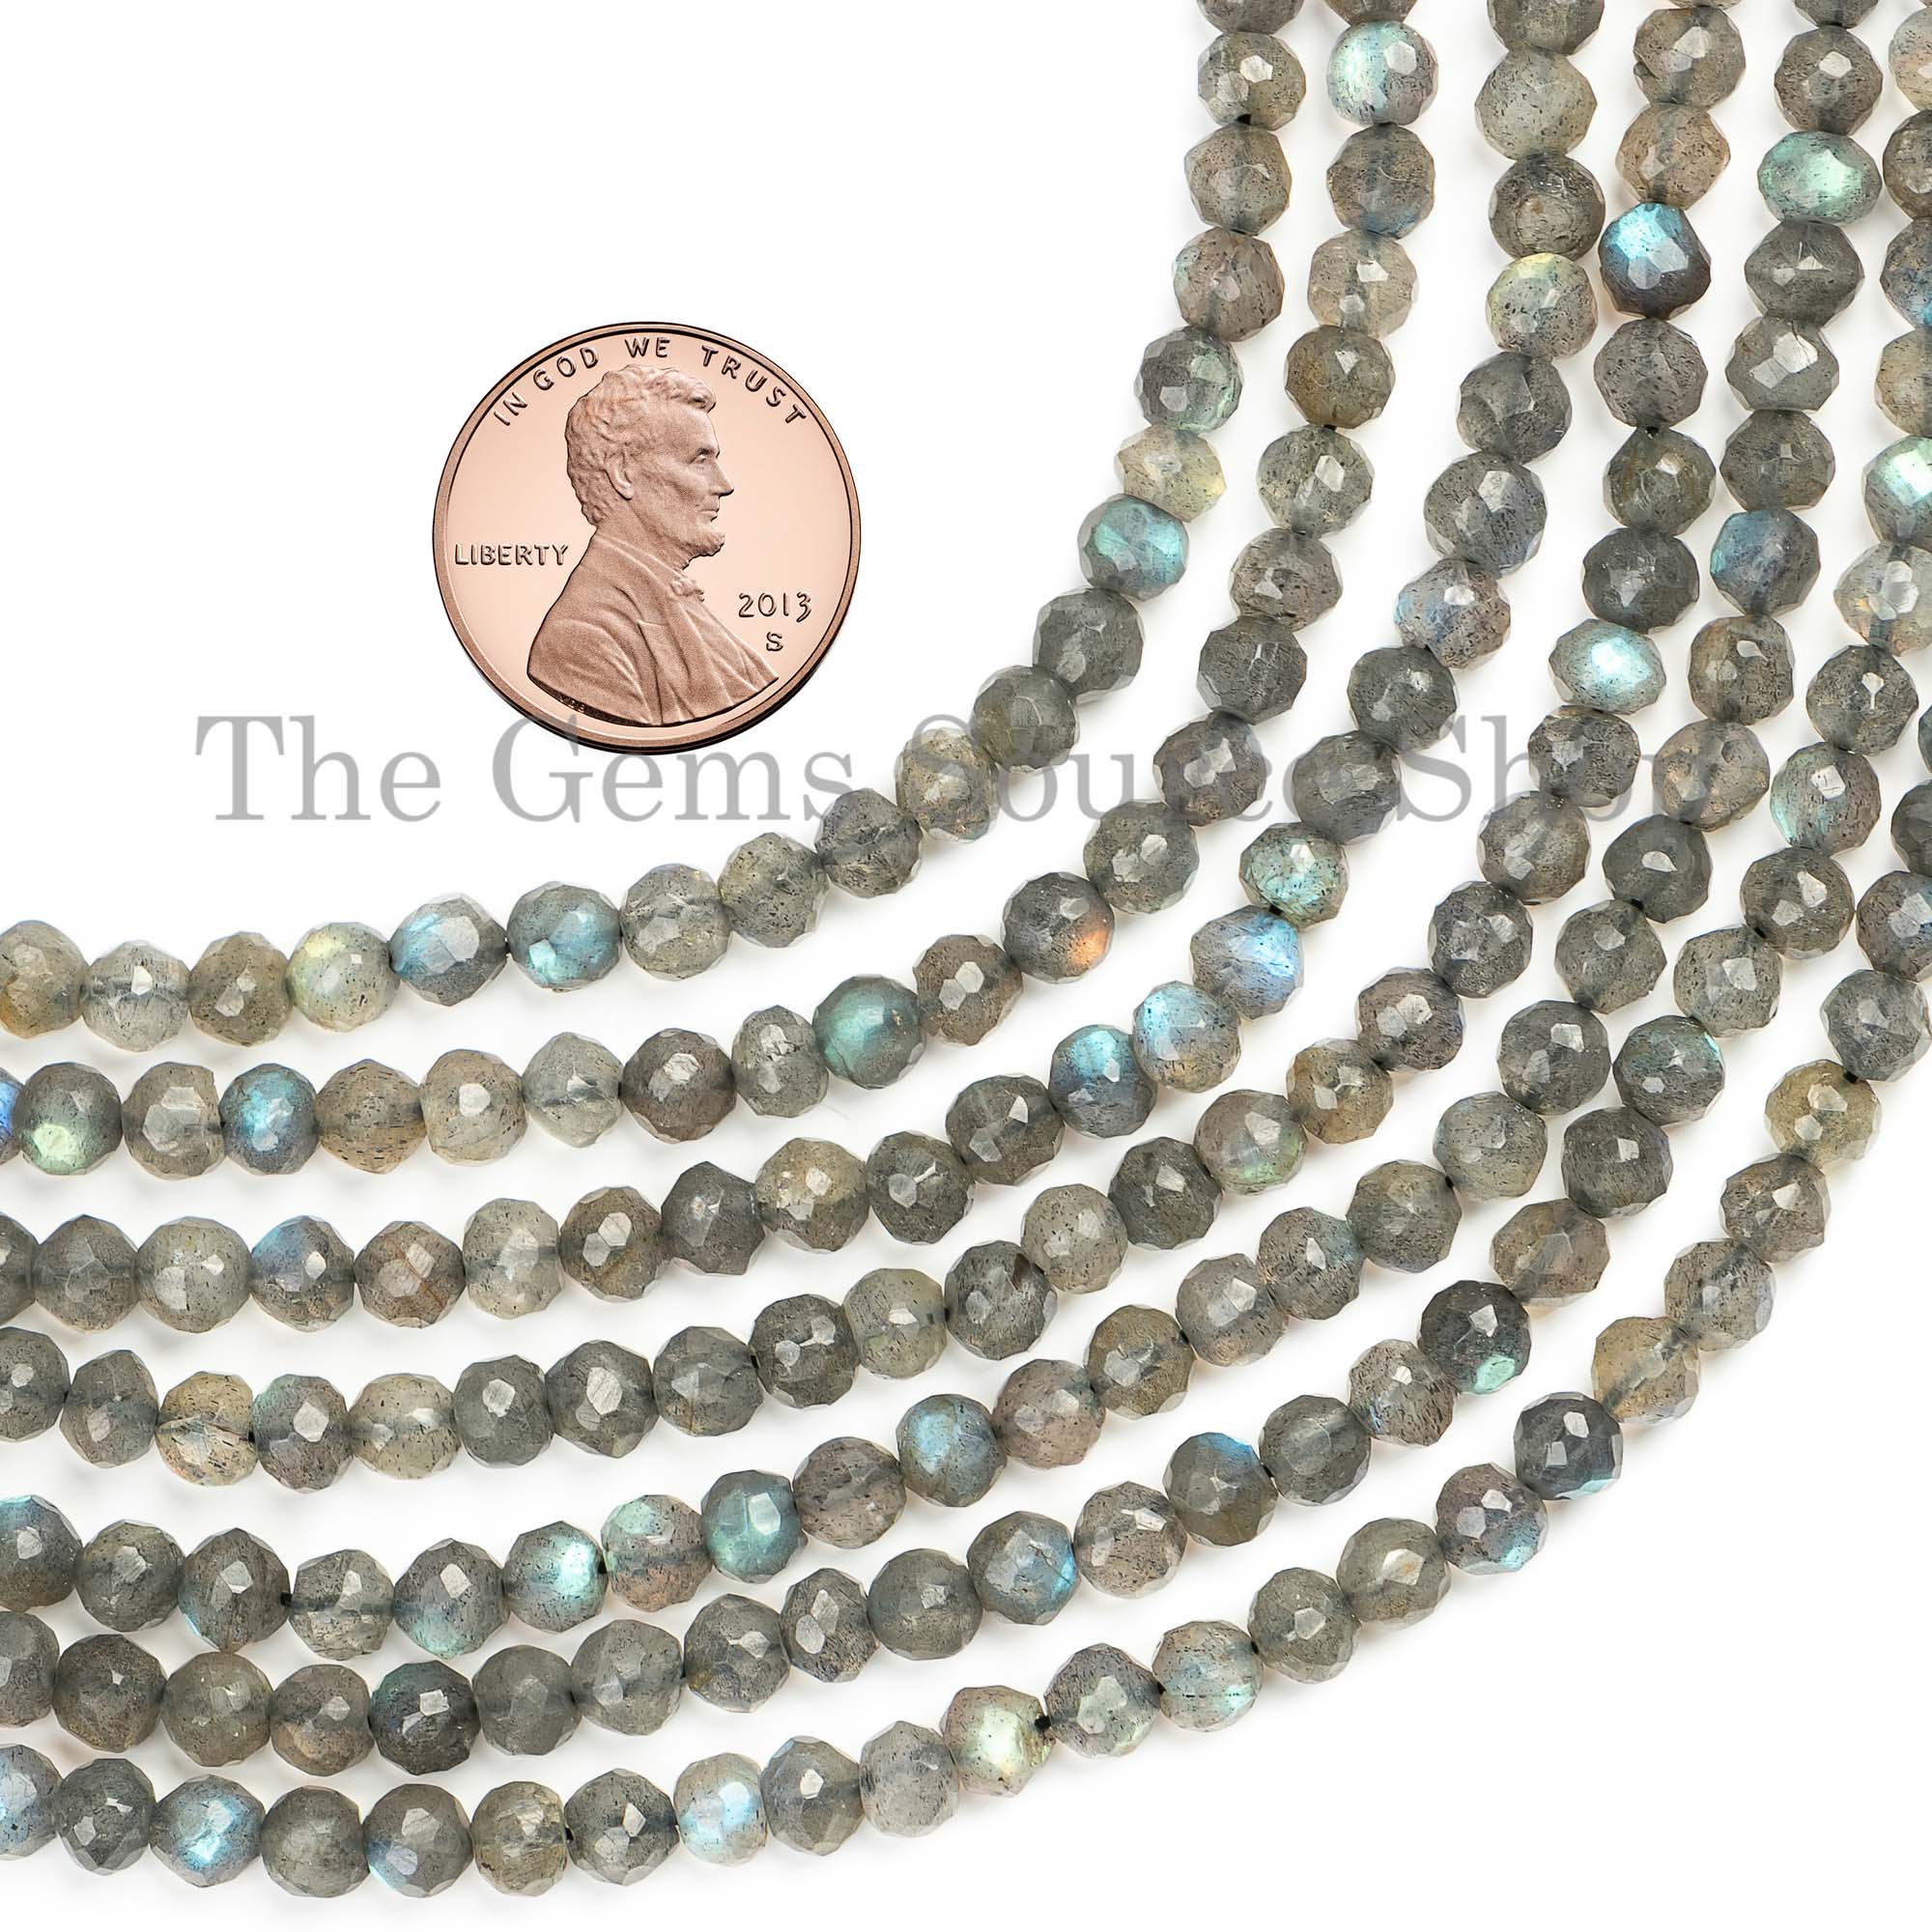 5-5.5mm Labradorite Beads, Labradorite Faceted Beads, Labradorite Round Shape Beads, Gemstone Beads